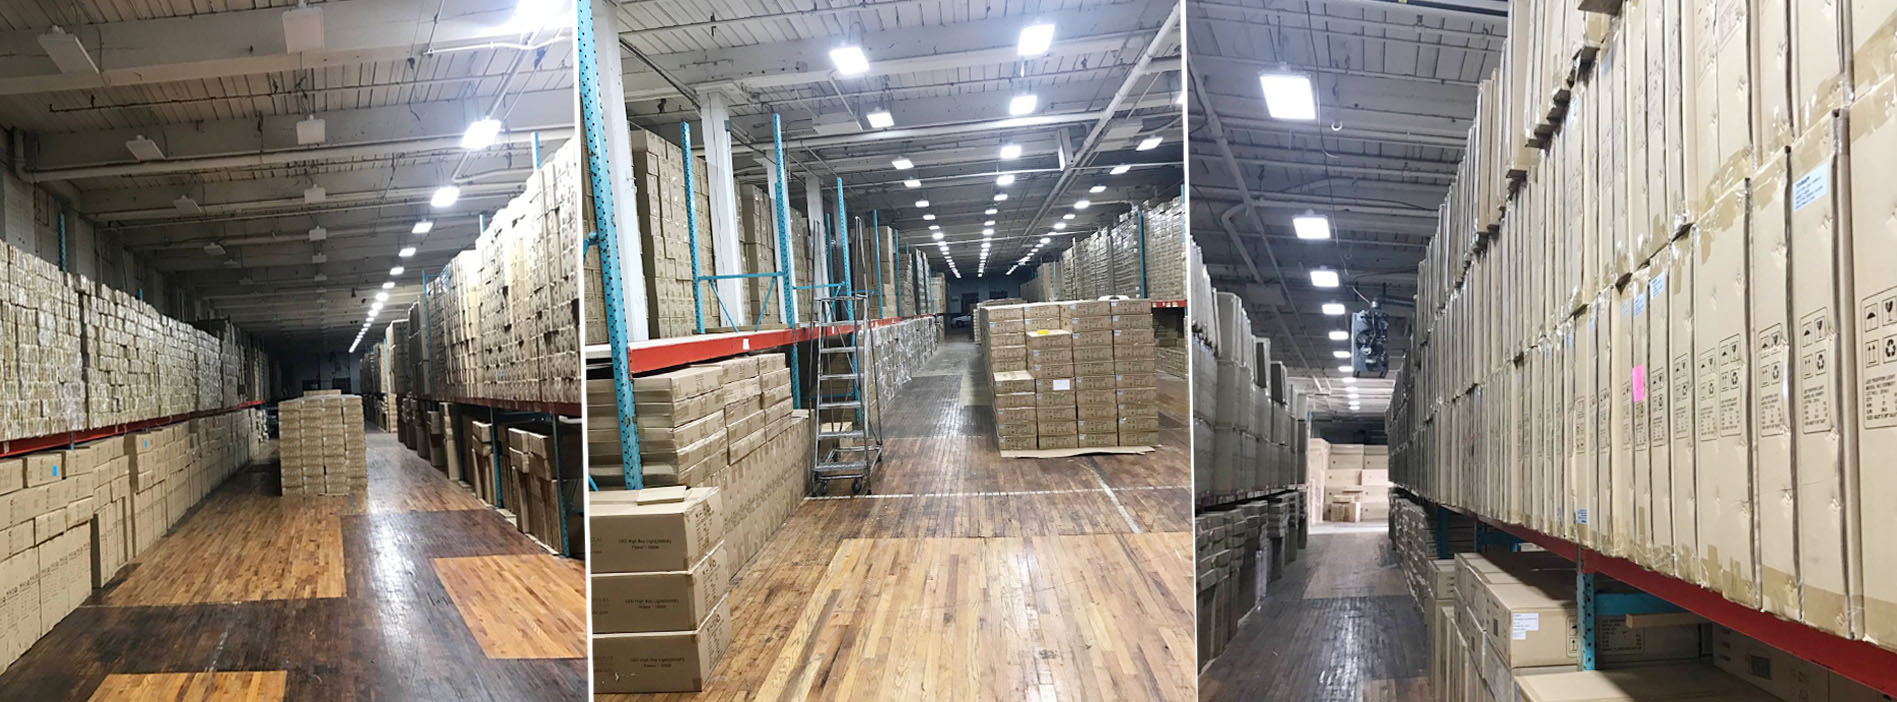 ecoglxyled warehouse